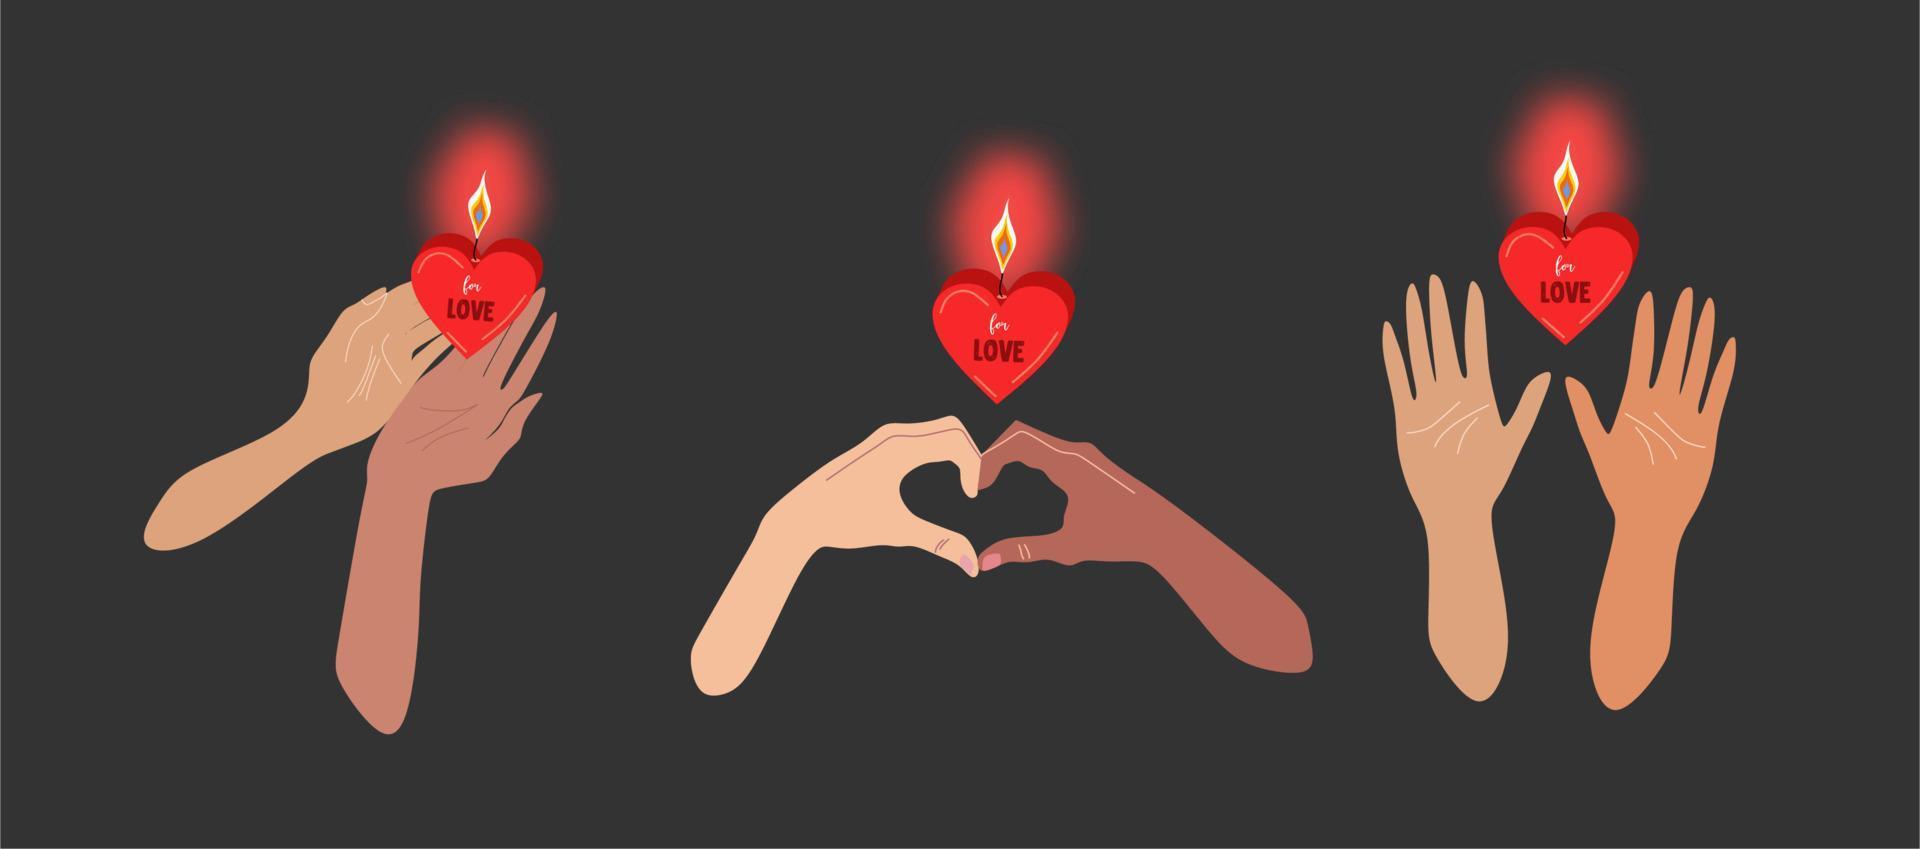 fond marron foncé, trois paires de mains tenant une bougie allumée en forme de coeur rouge, lueur rose autour de la bougie. illustration atmosphérique du symbole de l'amour. St. saint valentin, saint valentin vecteur